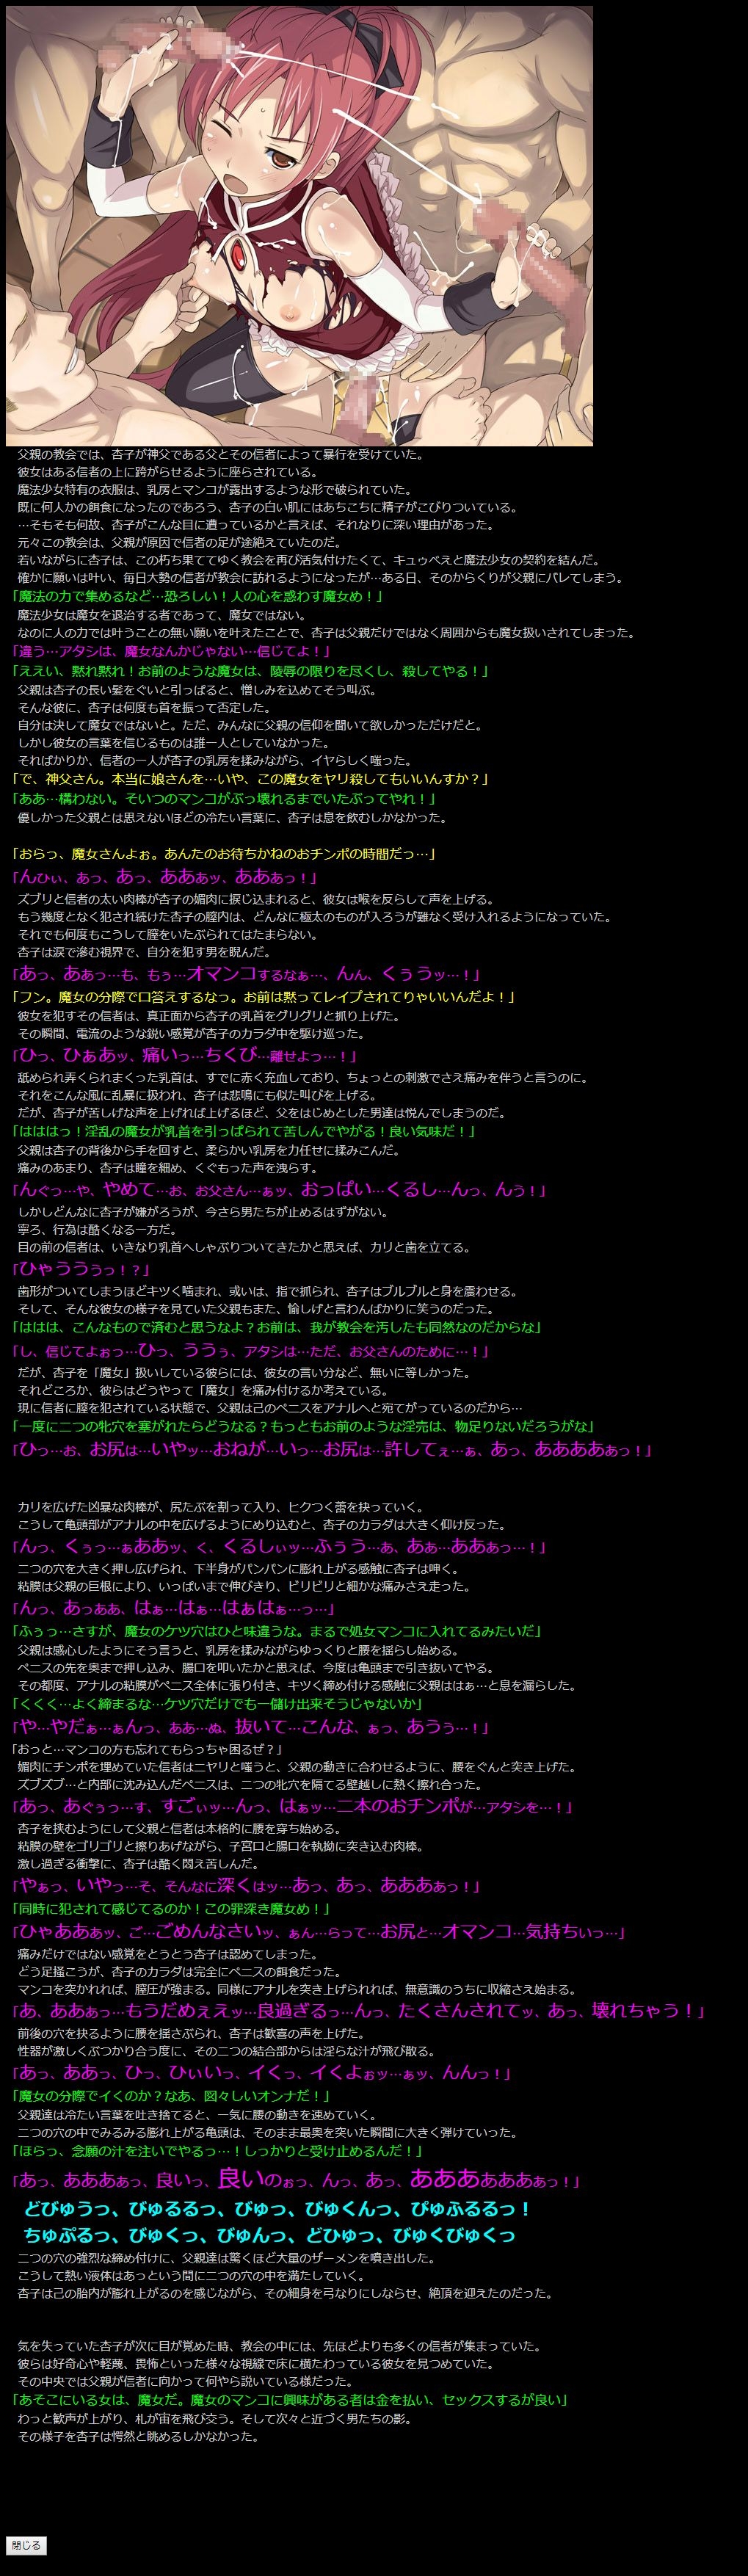 (COMIC1☆5) [LolitaChannel (Arigase Shinji)] Yuumei Chara Kannou Shousetsu CG Shuu No. 185!! Puella Magi Madoka Magica HaaHaa CG Shuu (Puella Magi Madoka Magica) 15